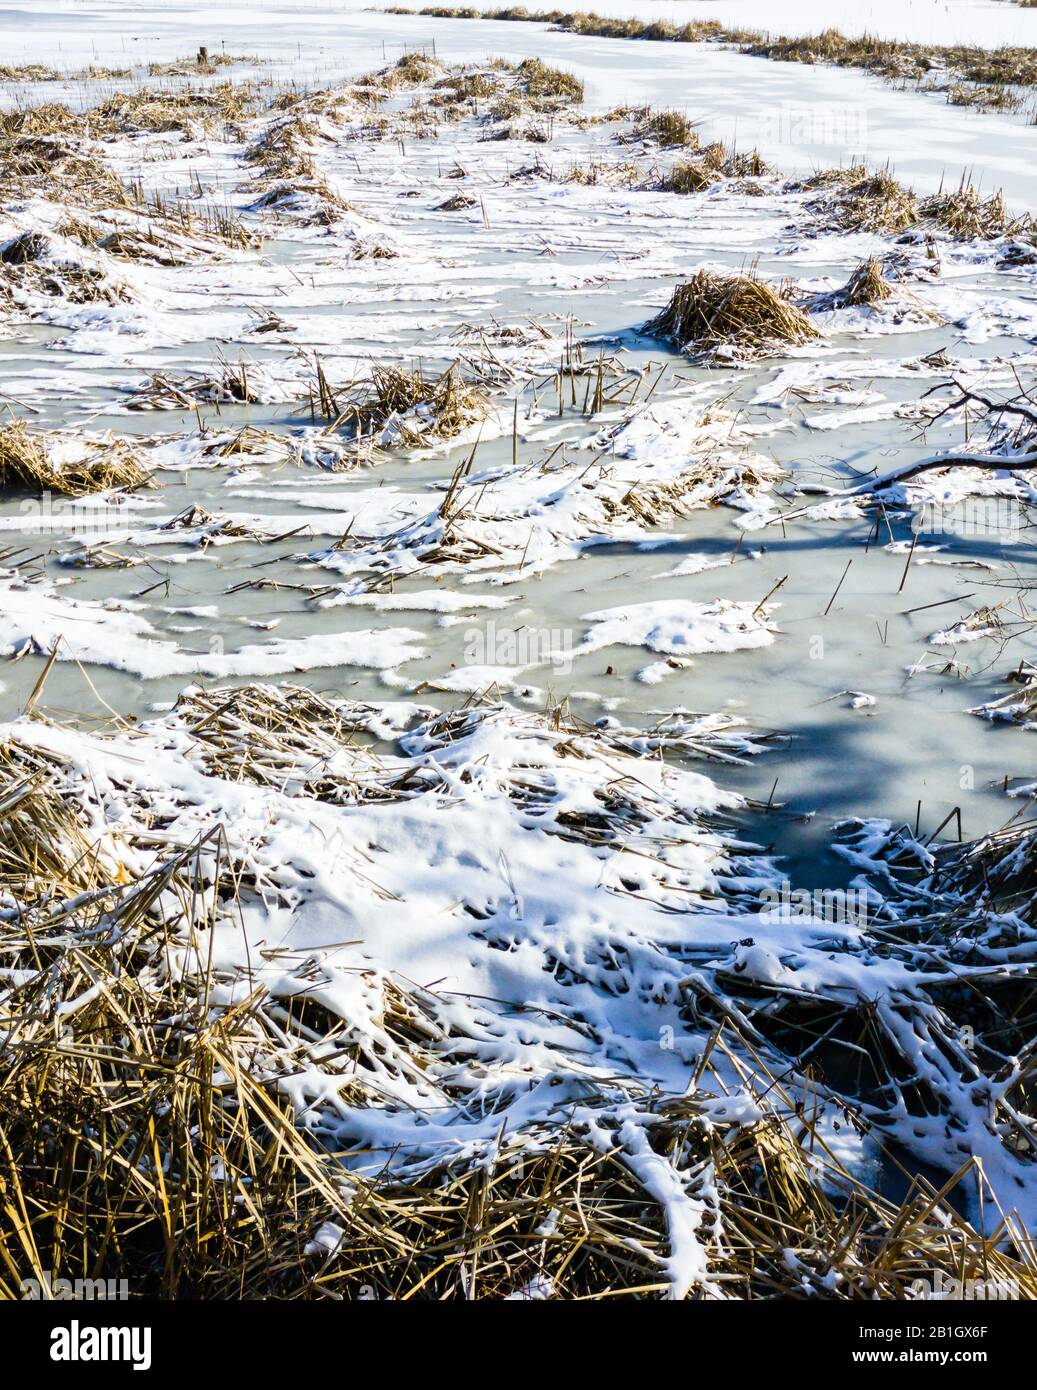 Touffes d'herbe sèche et roseaux sur un étang gelé couvert de glace et de neige. Banque D'Images